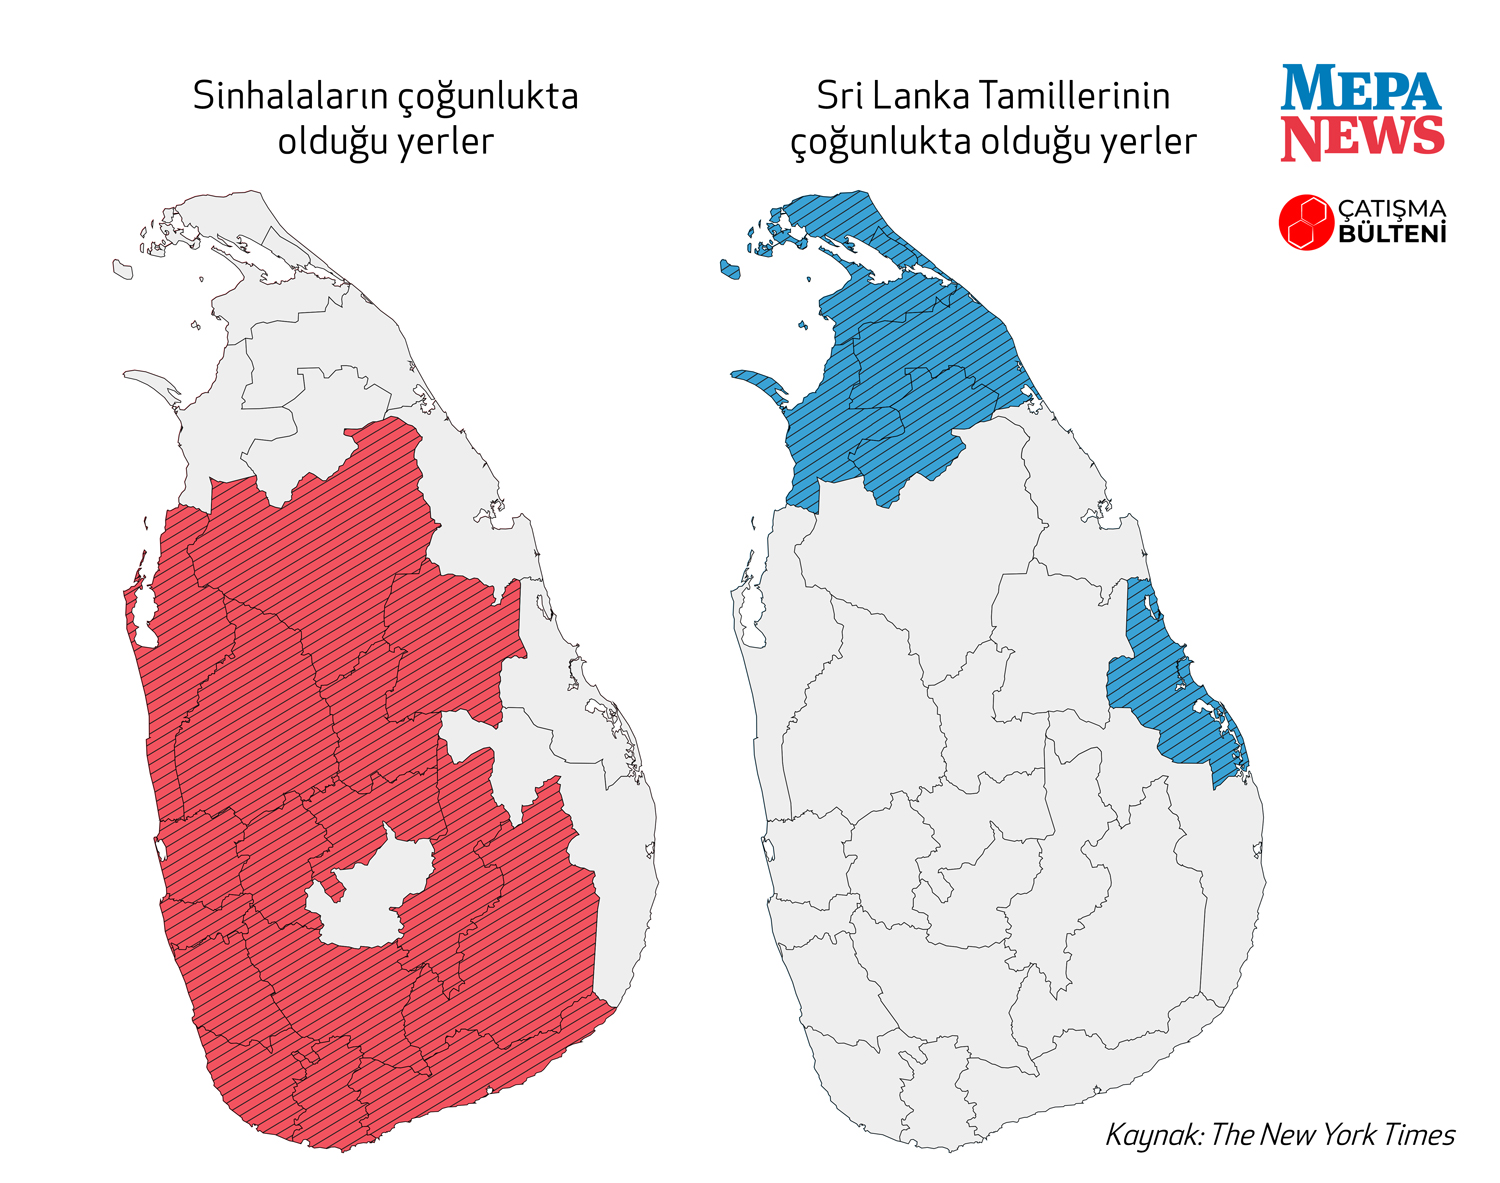 srilanka2.jpg